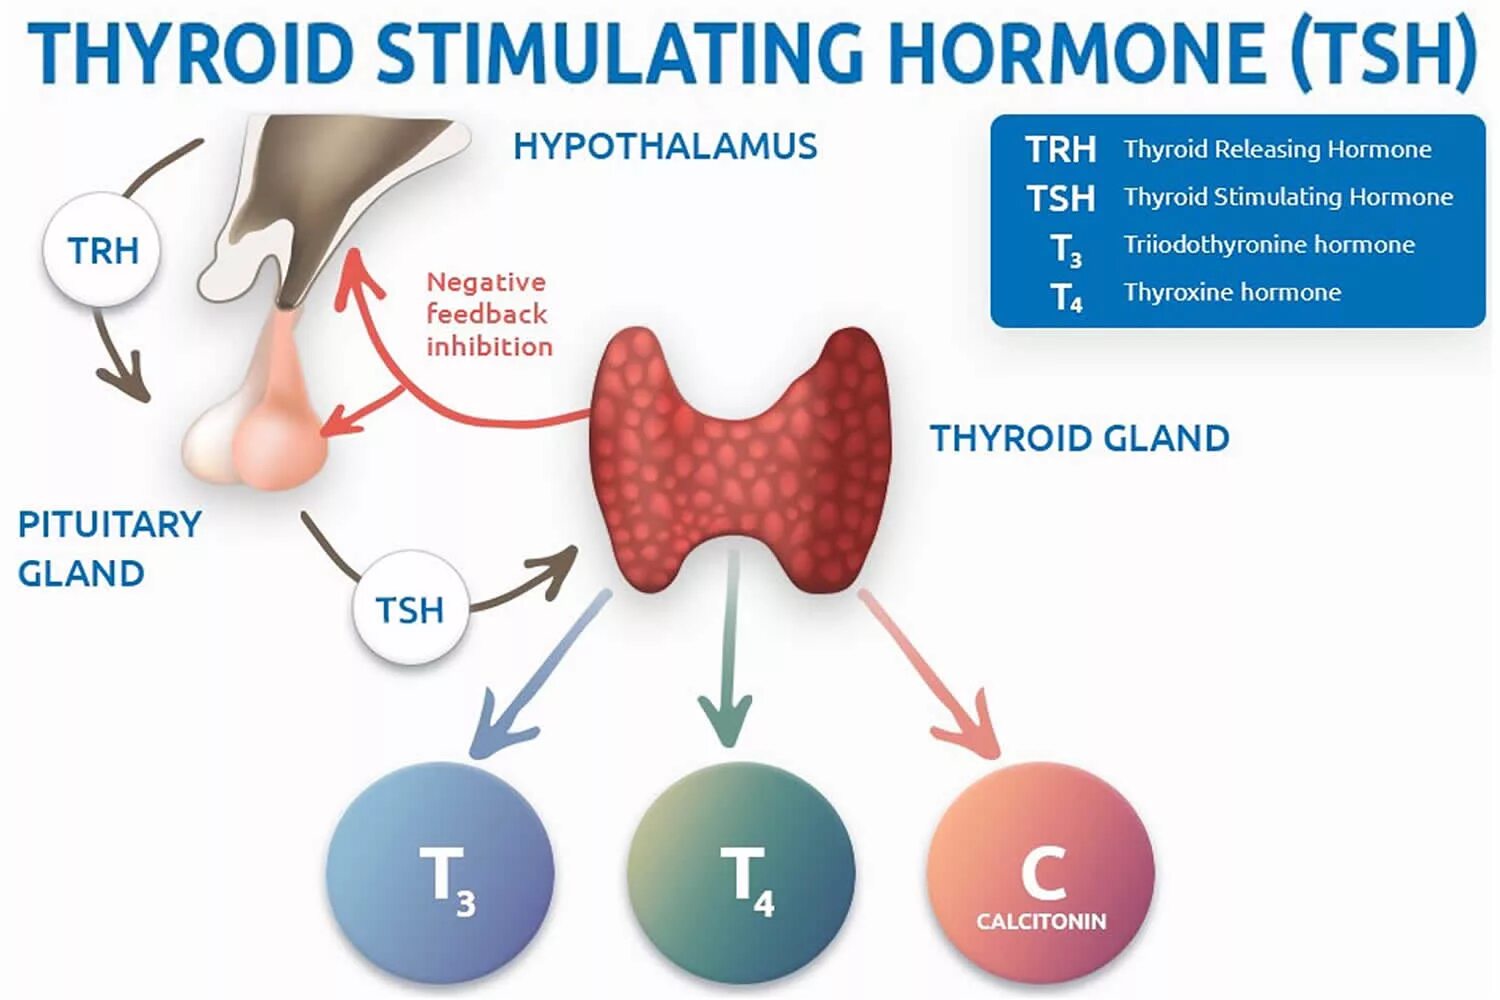 ТТГ гормон 4.60. Гормоны щитовидной железы ТТГ И т4. ТТГ влияет на функцию щитовидной железы по принципу. Тиреотропный гормон вырабатывается гормонов.